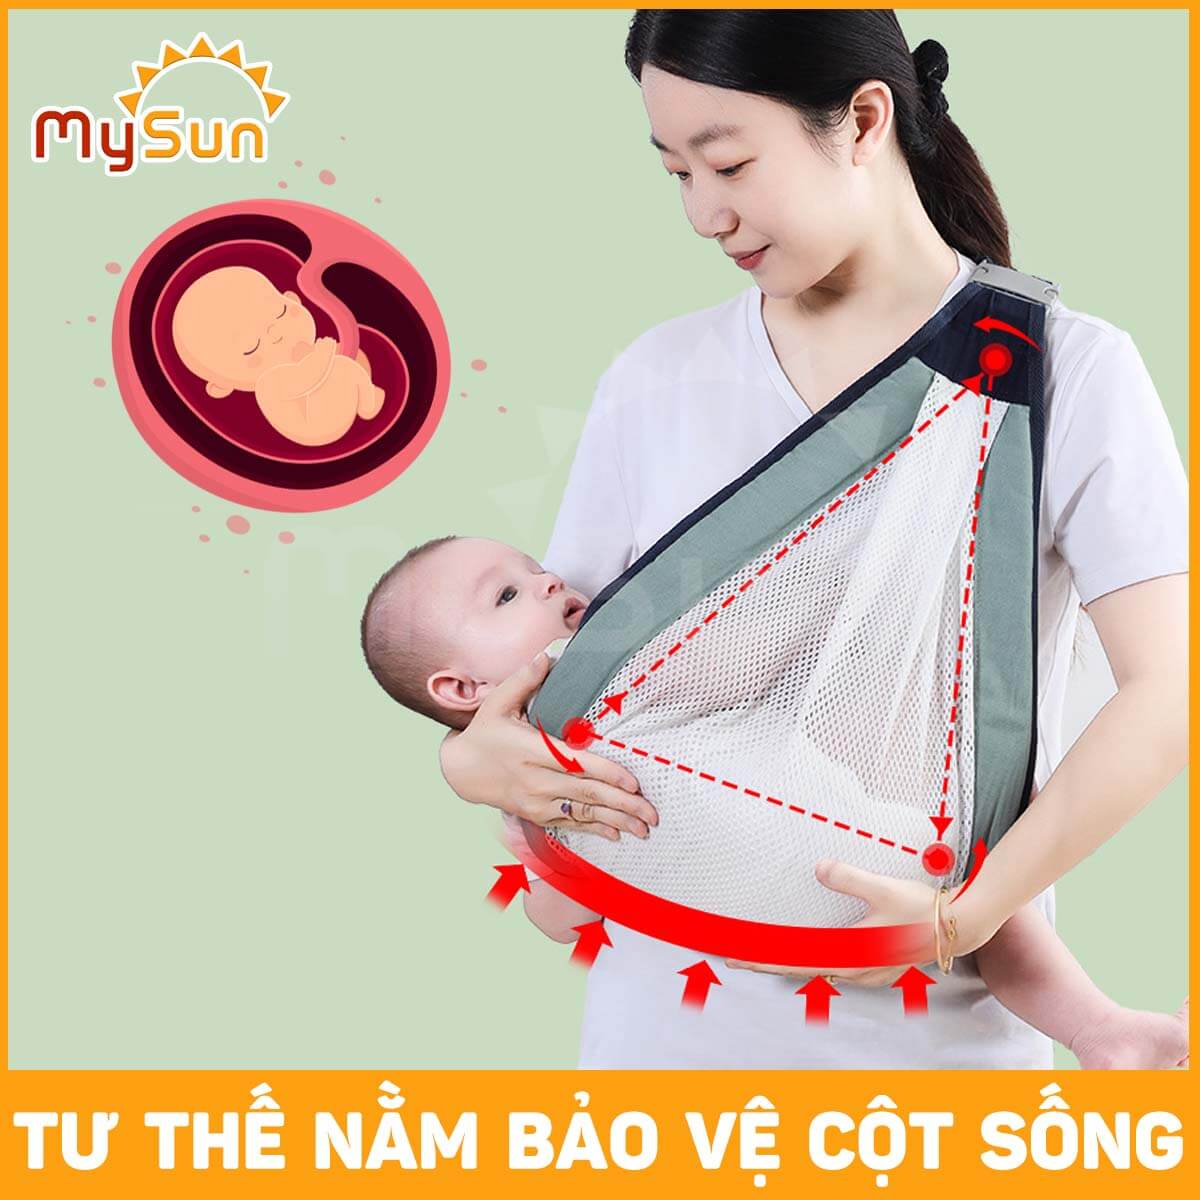 Đai địu bằng vải lưới giá rẻ cho em bé điệu trẻ sơ sinh bế nằm ngang MySun